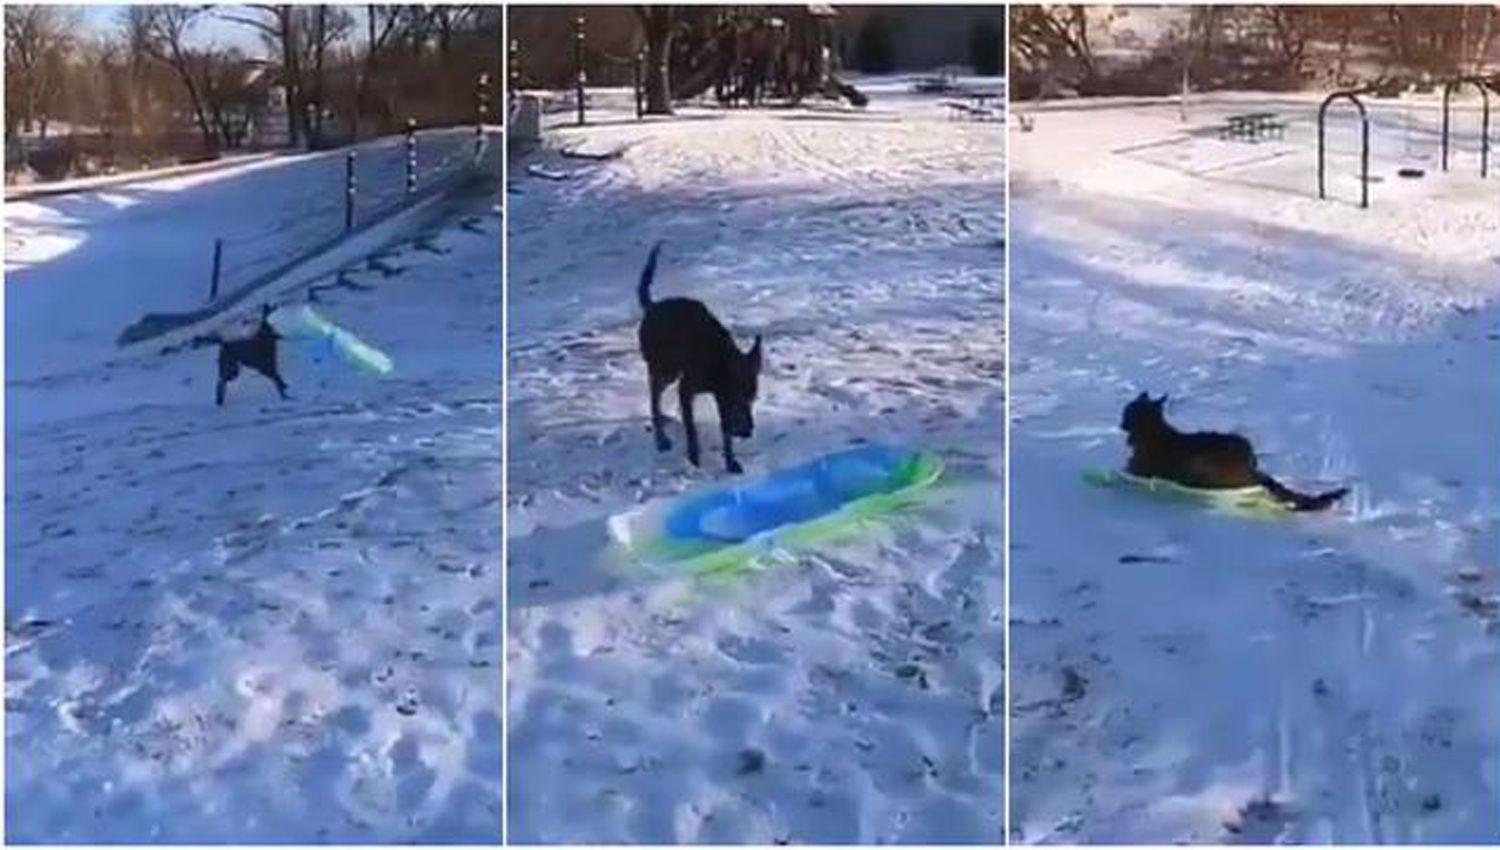 El viacutedeo viral de un perro en la nieve que bate reacutecords de reproducciones